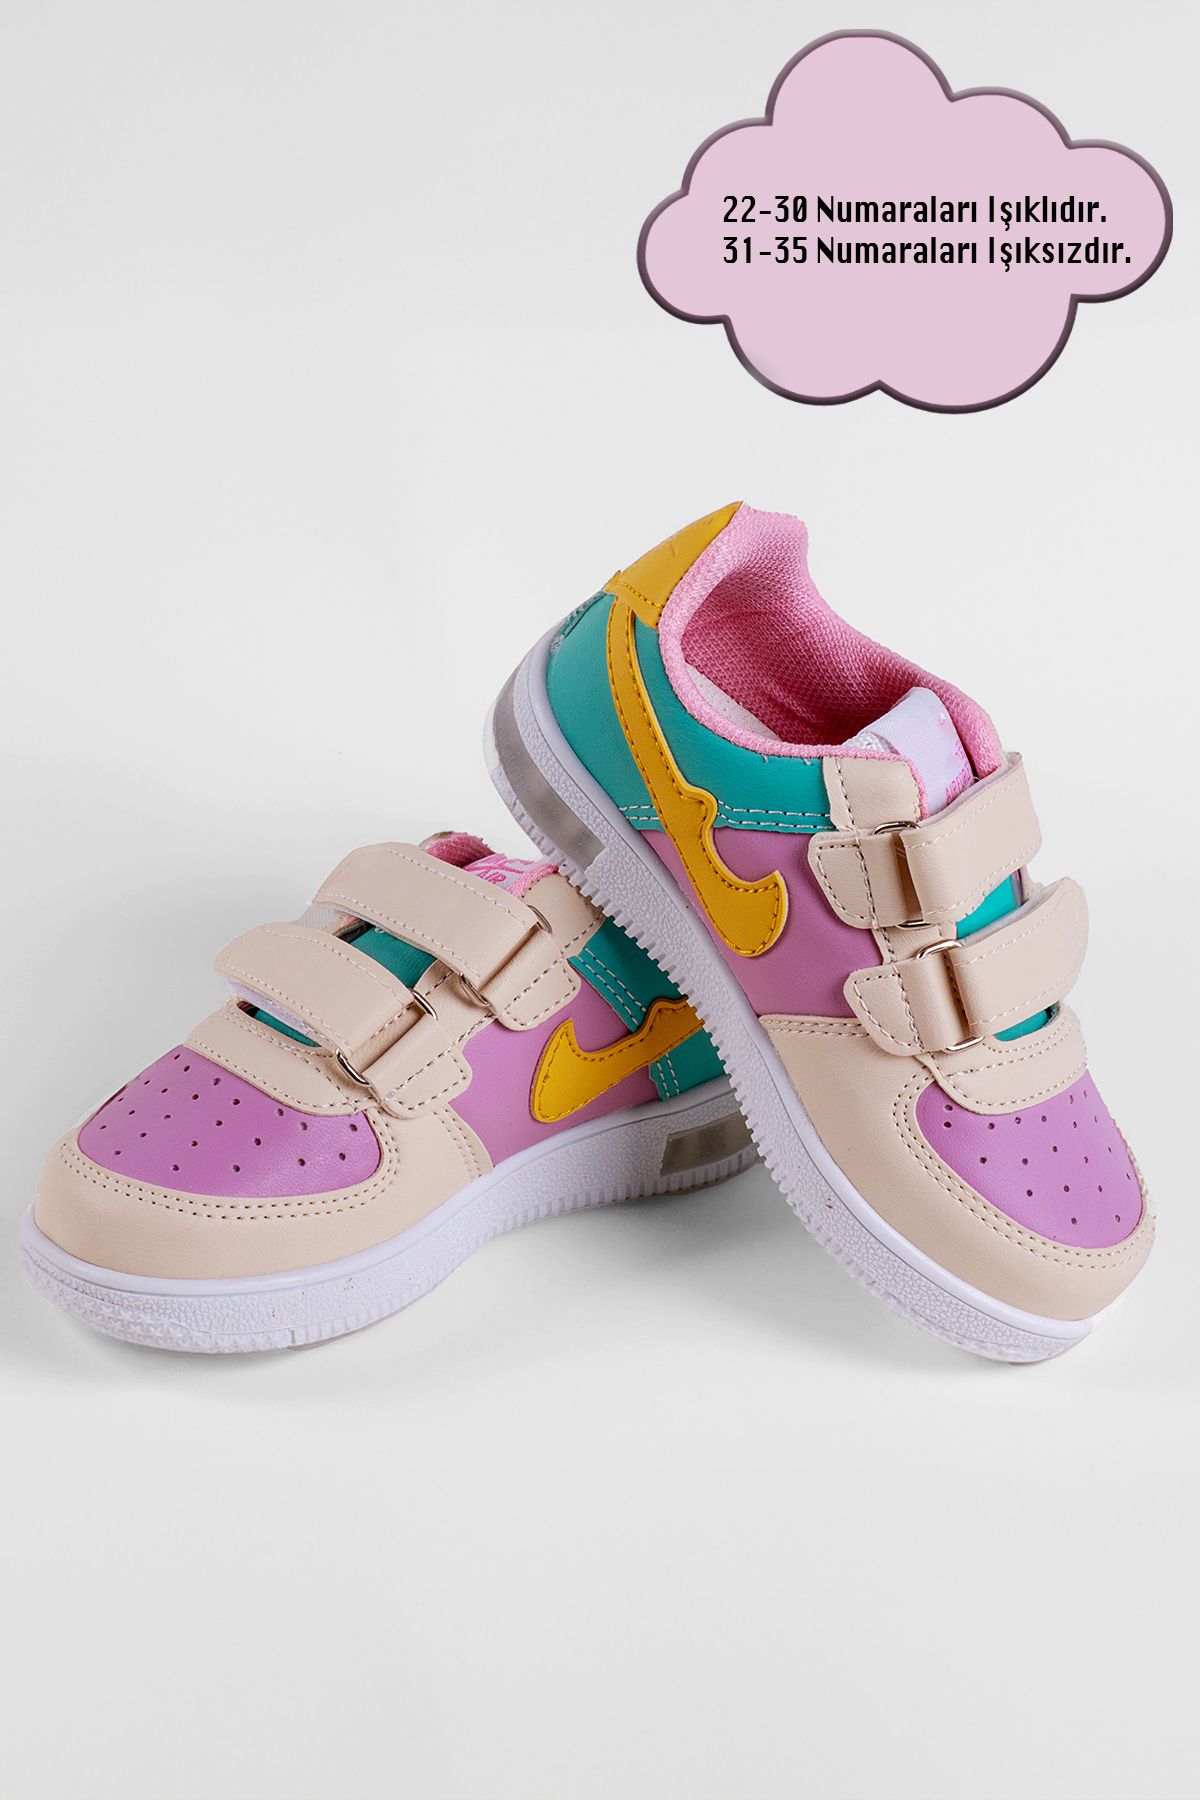 NS Little Kız Çocuk Renkli Sneaker Spor Ayakkabı (1 BEDEN KÜÇÜK ALINIZ)